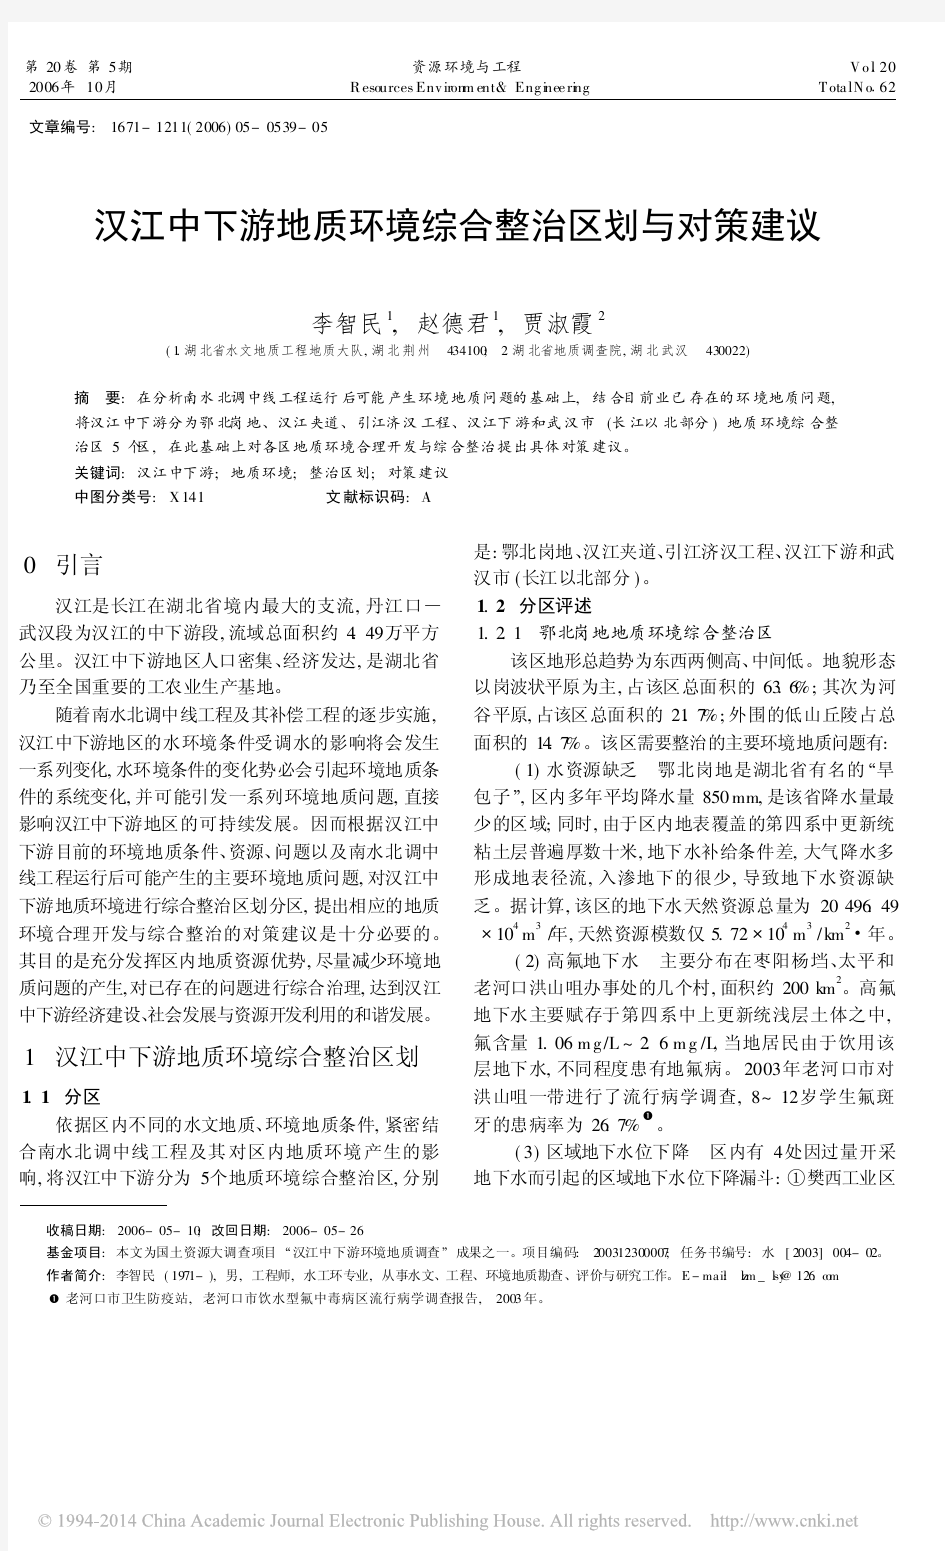 汉江中下游地质环境综合整治区划与对策建议